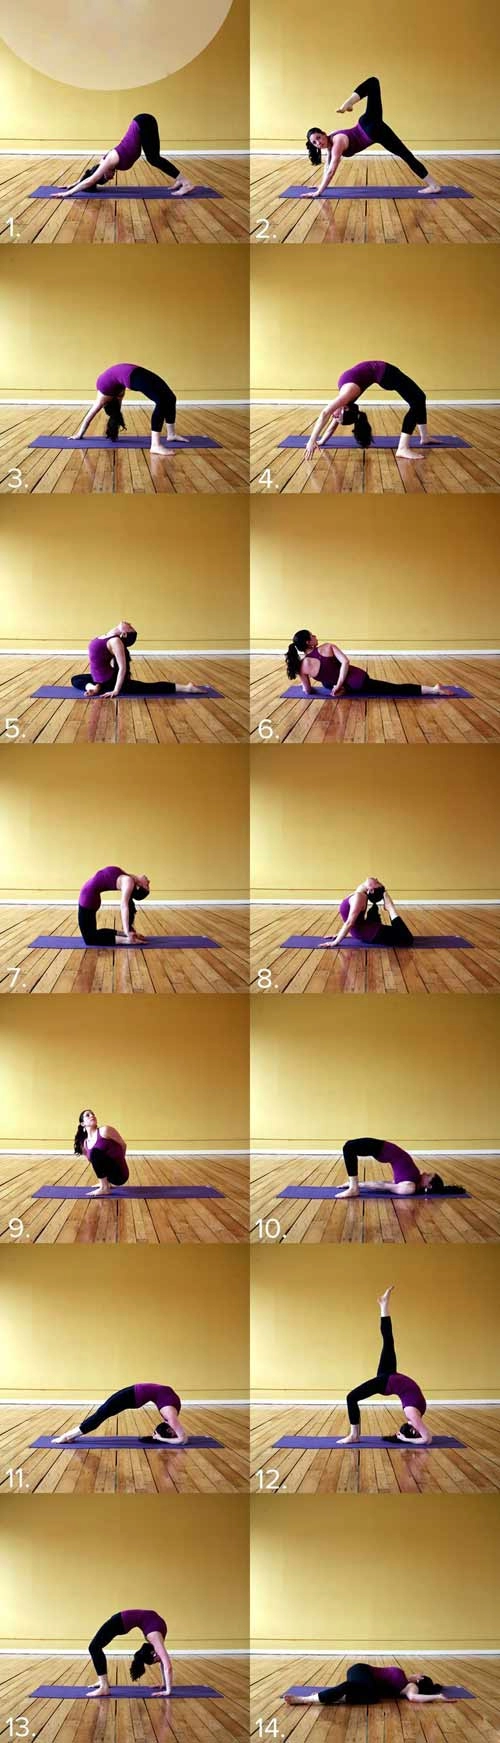 8 bài tập yoga tại nhà cho dáng xinh chàng mê tít